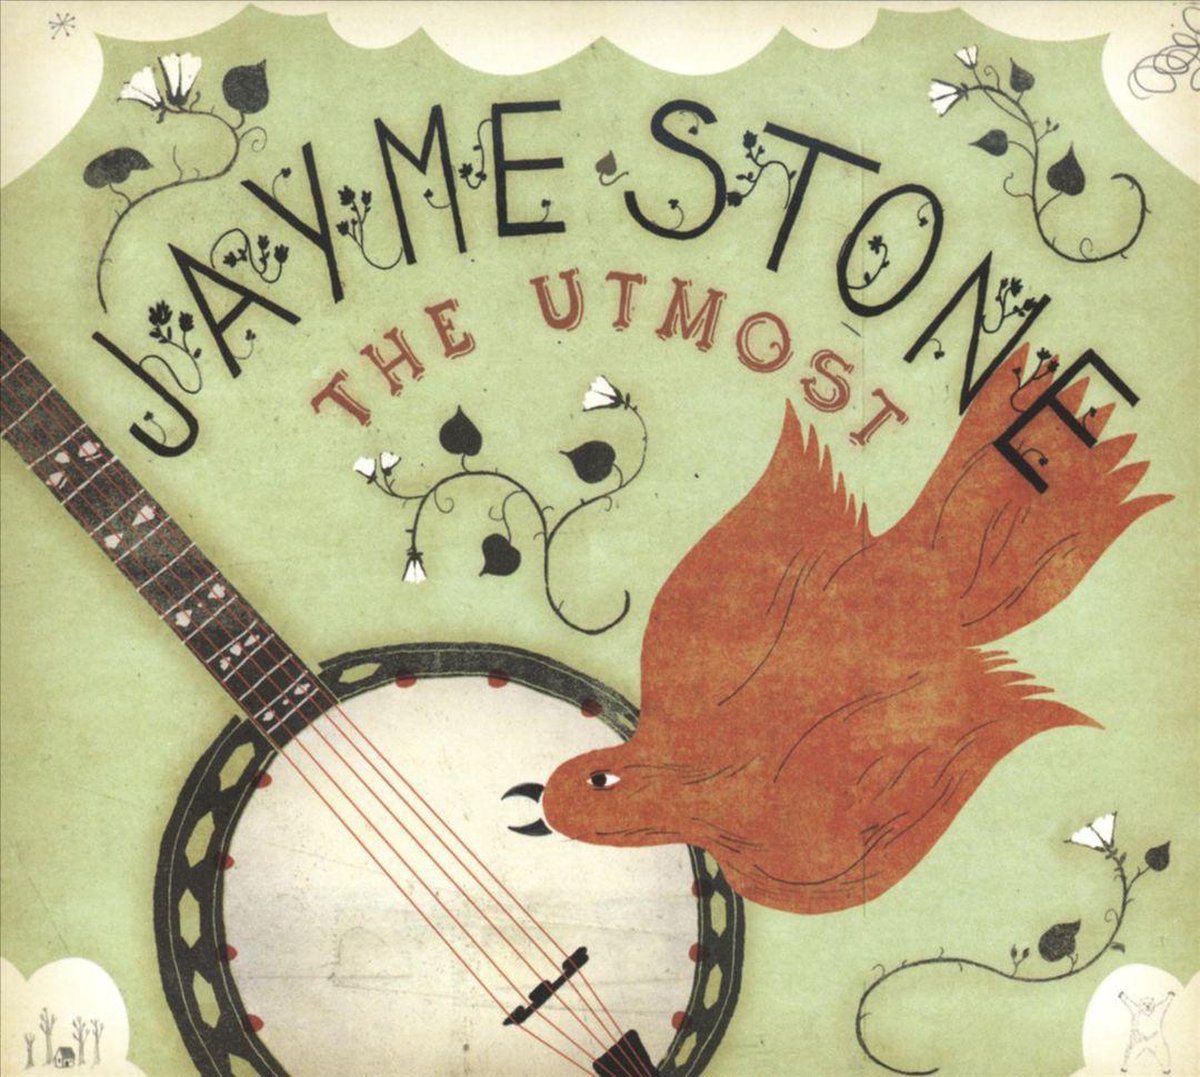 Utmost - Jayme Stone